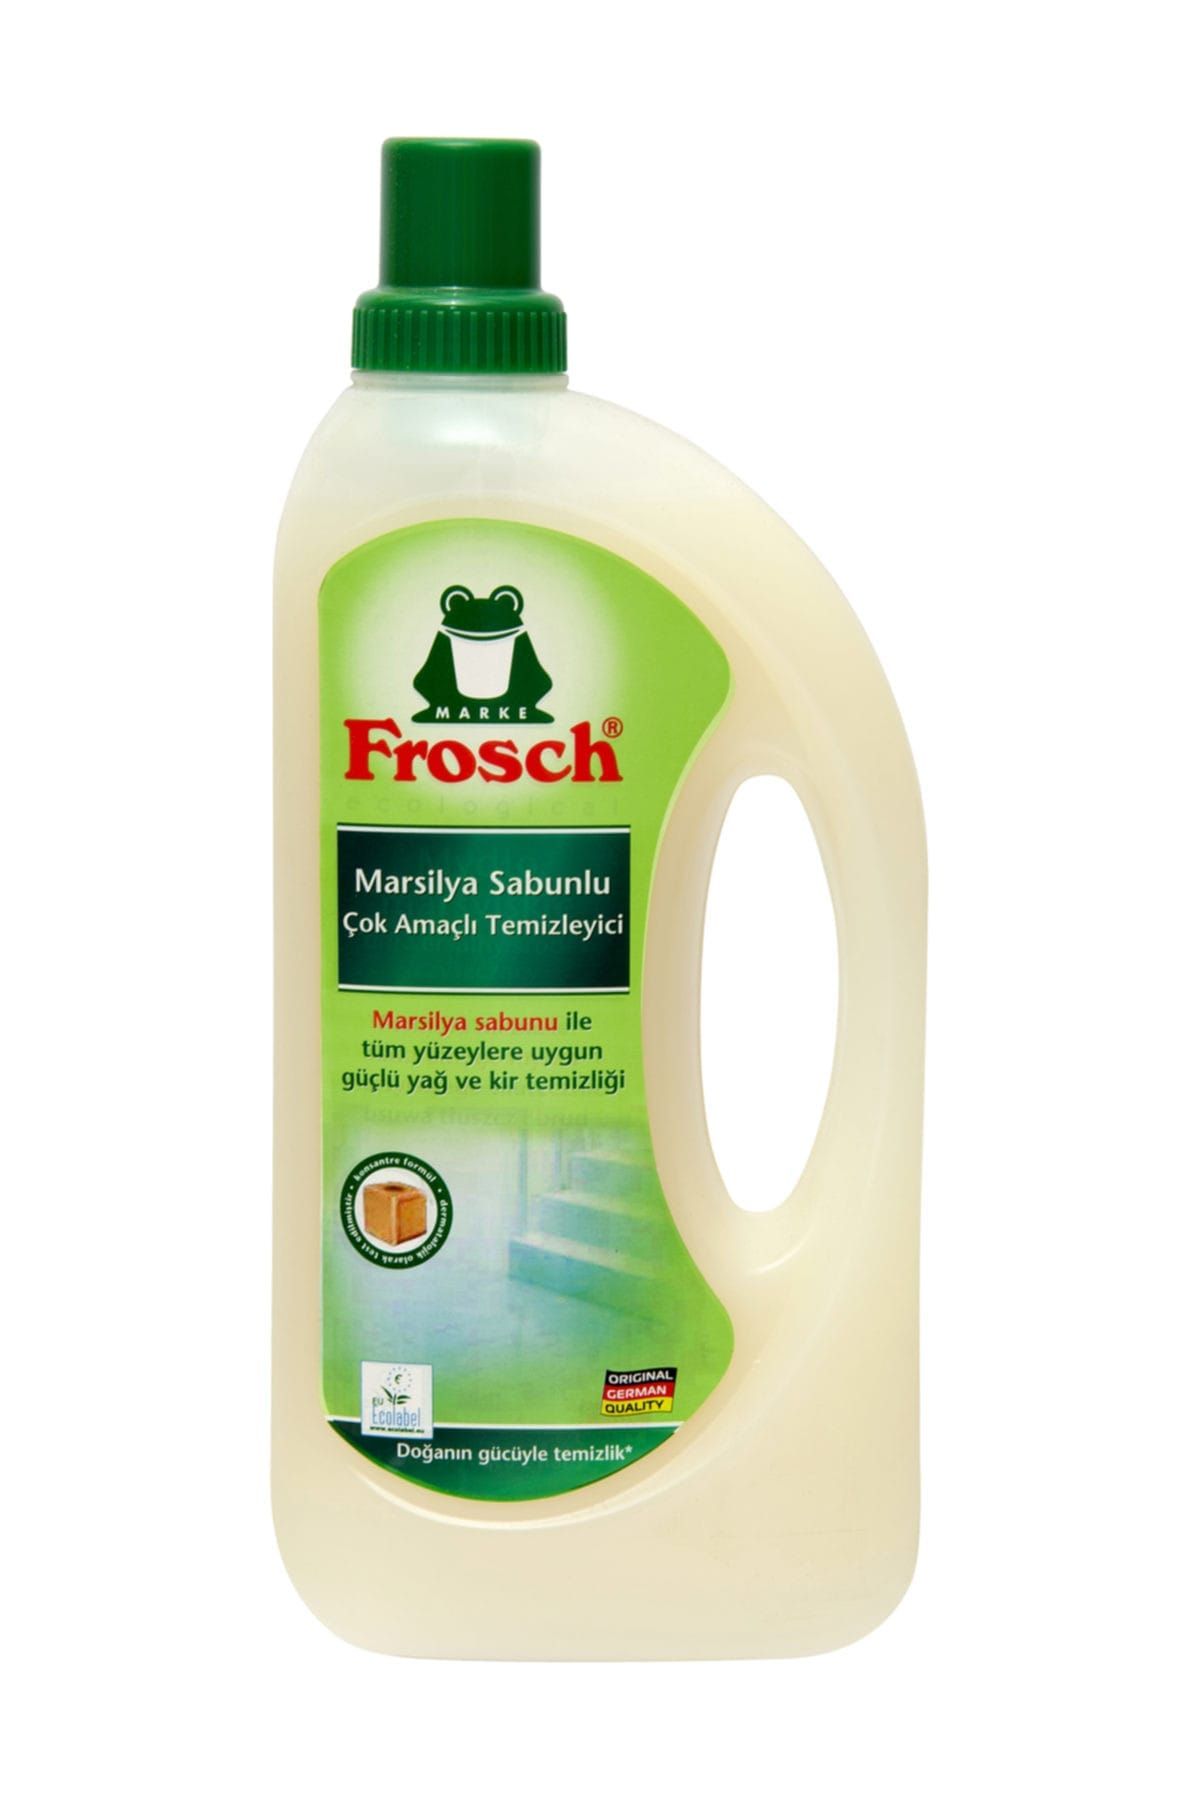 Frosch Marsilya Sabunlu Çok Amaçlı Temizleyici 1 lt